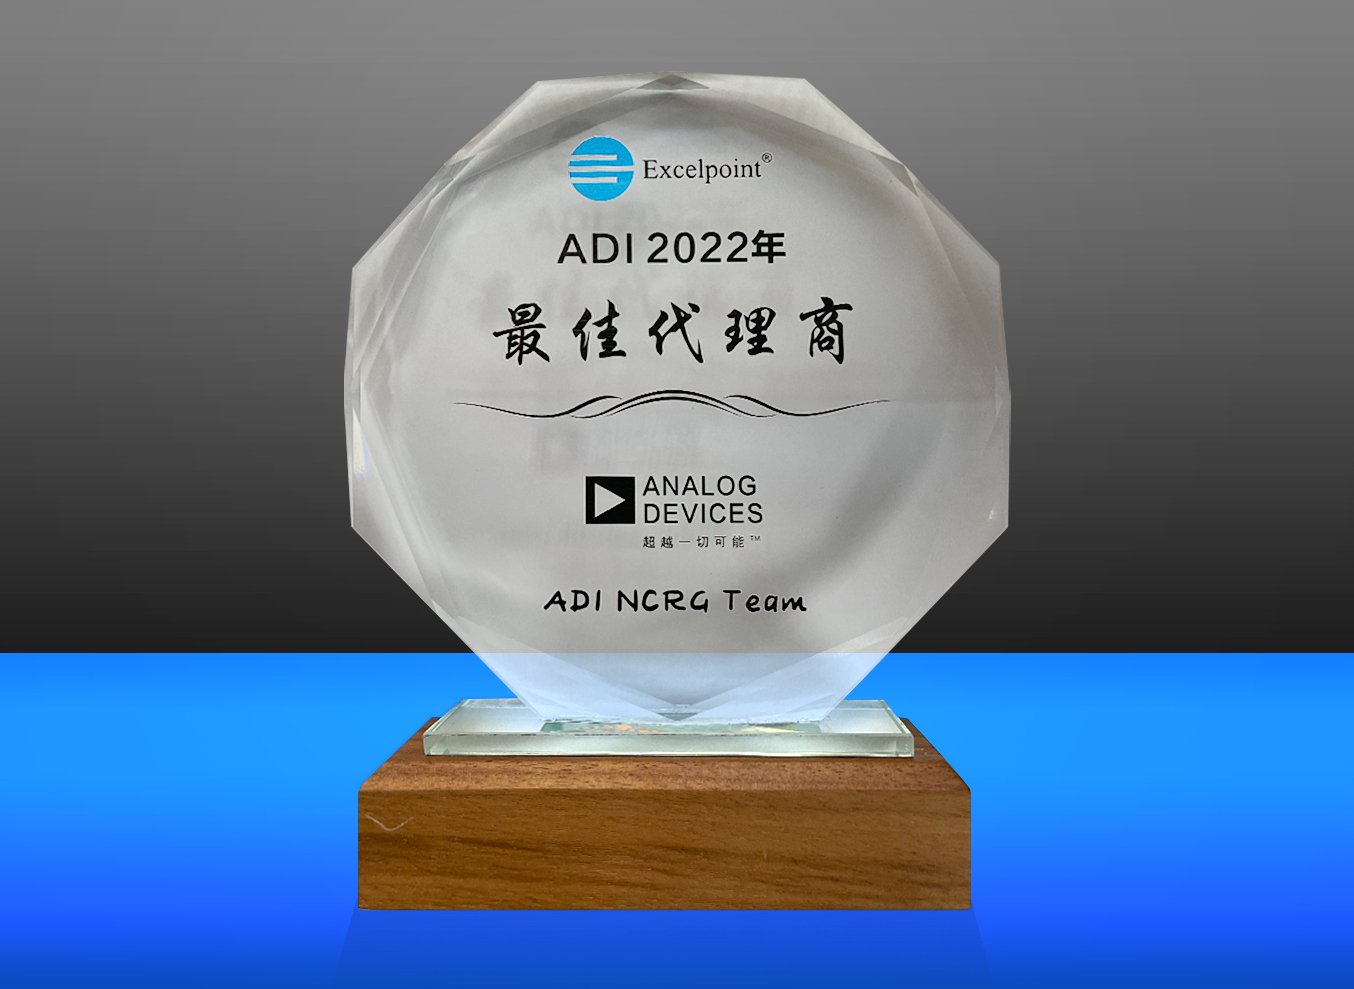 世健喜获ADI“2022年最佳代理商”等多个奖项